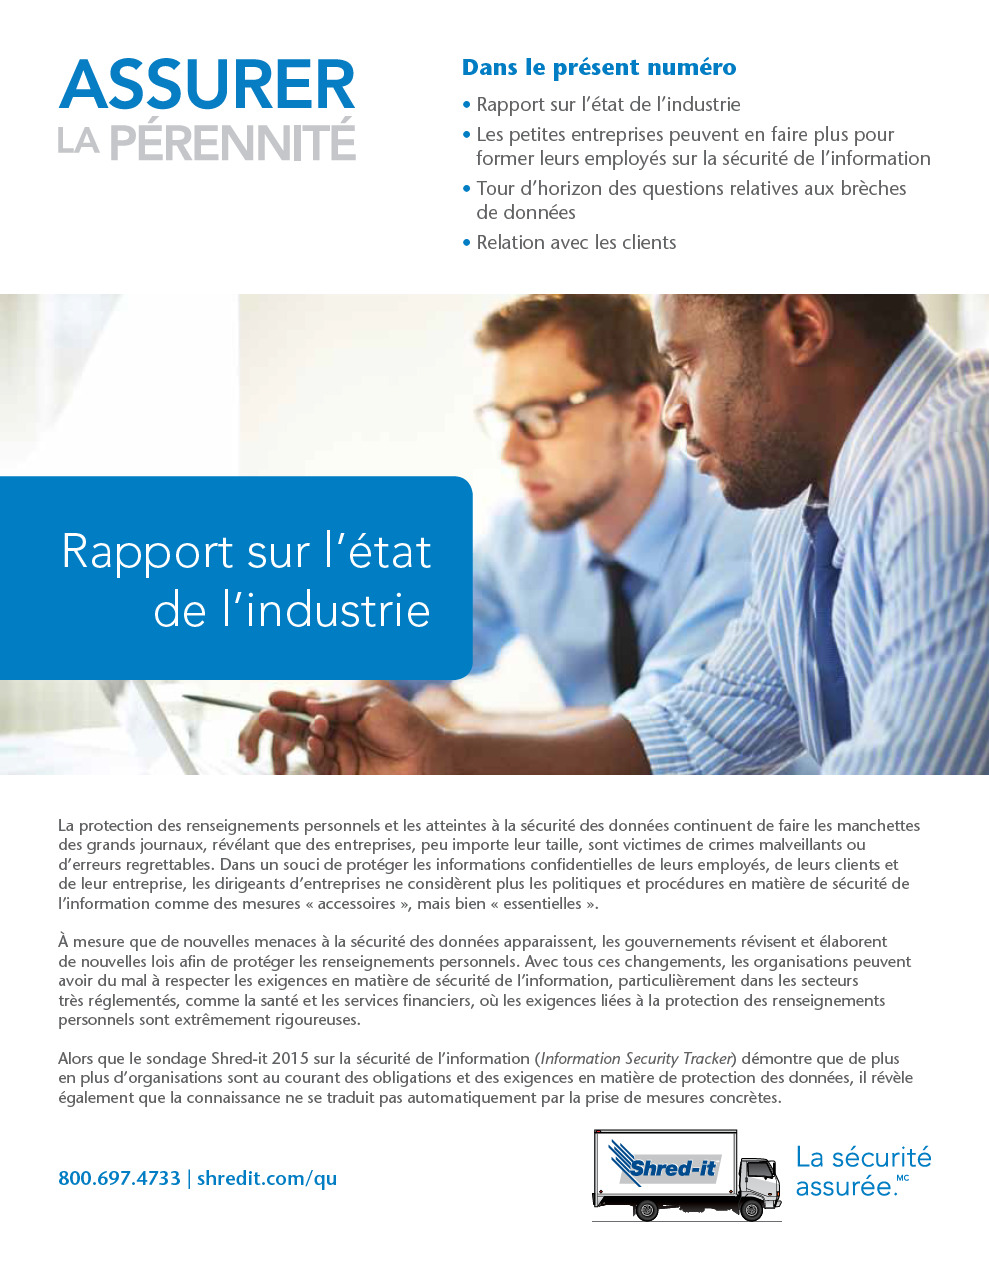 Shred-it_Rapport_sur_l_etat_de_l_industrie_CA_FR.pdf